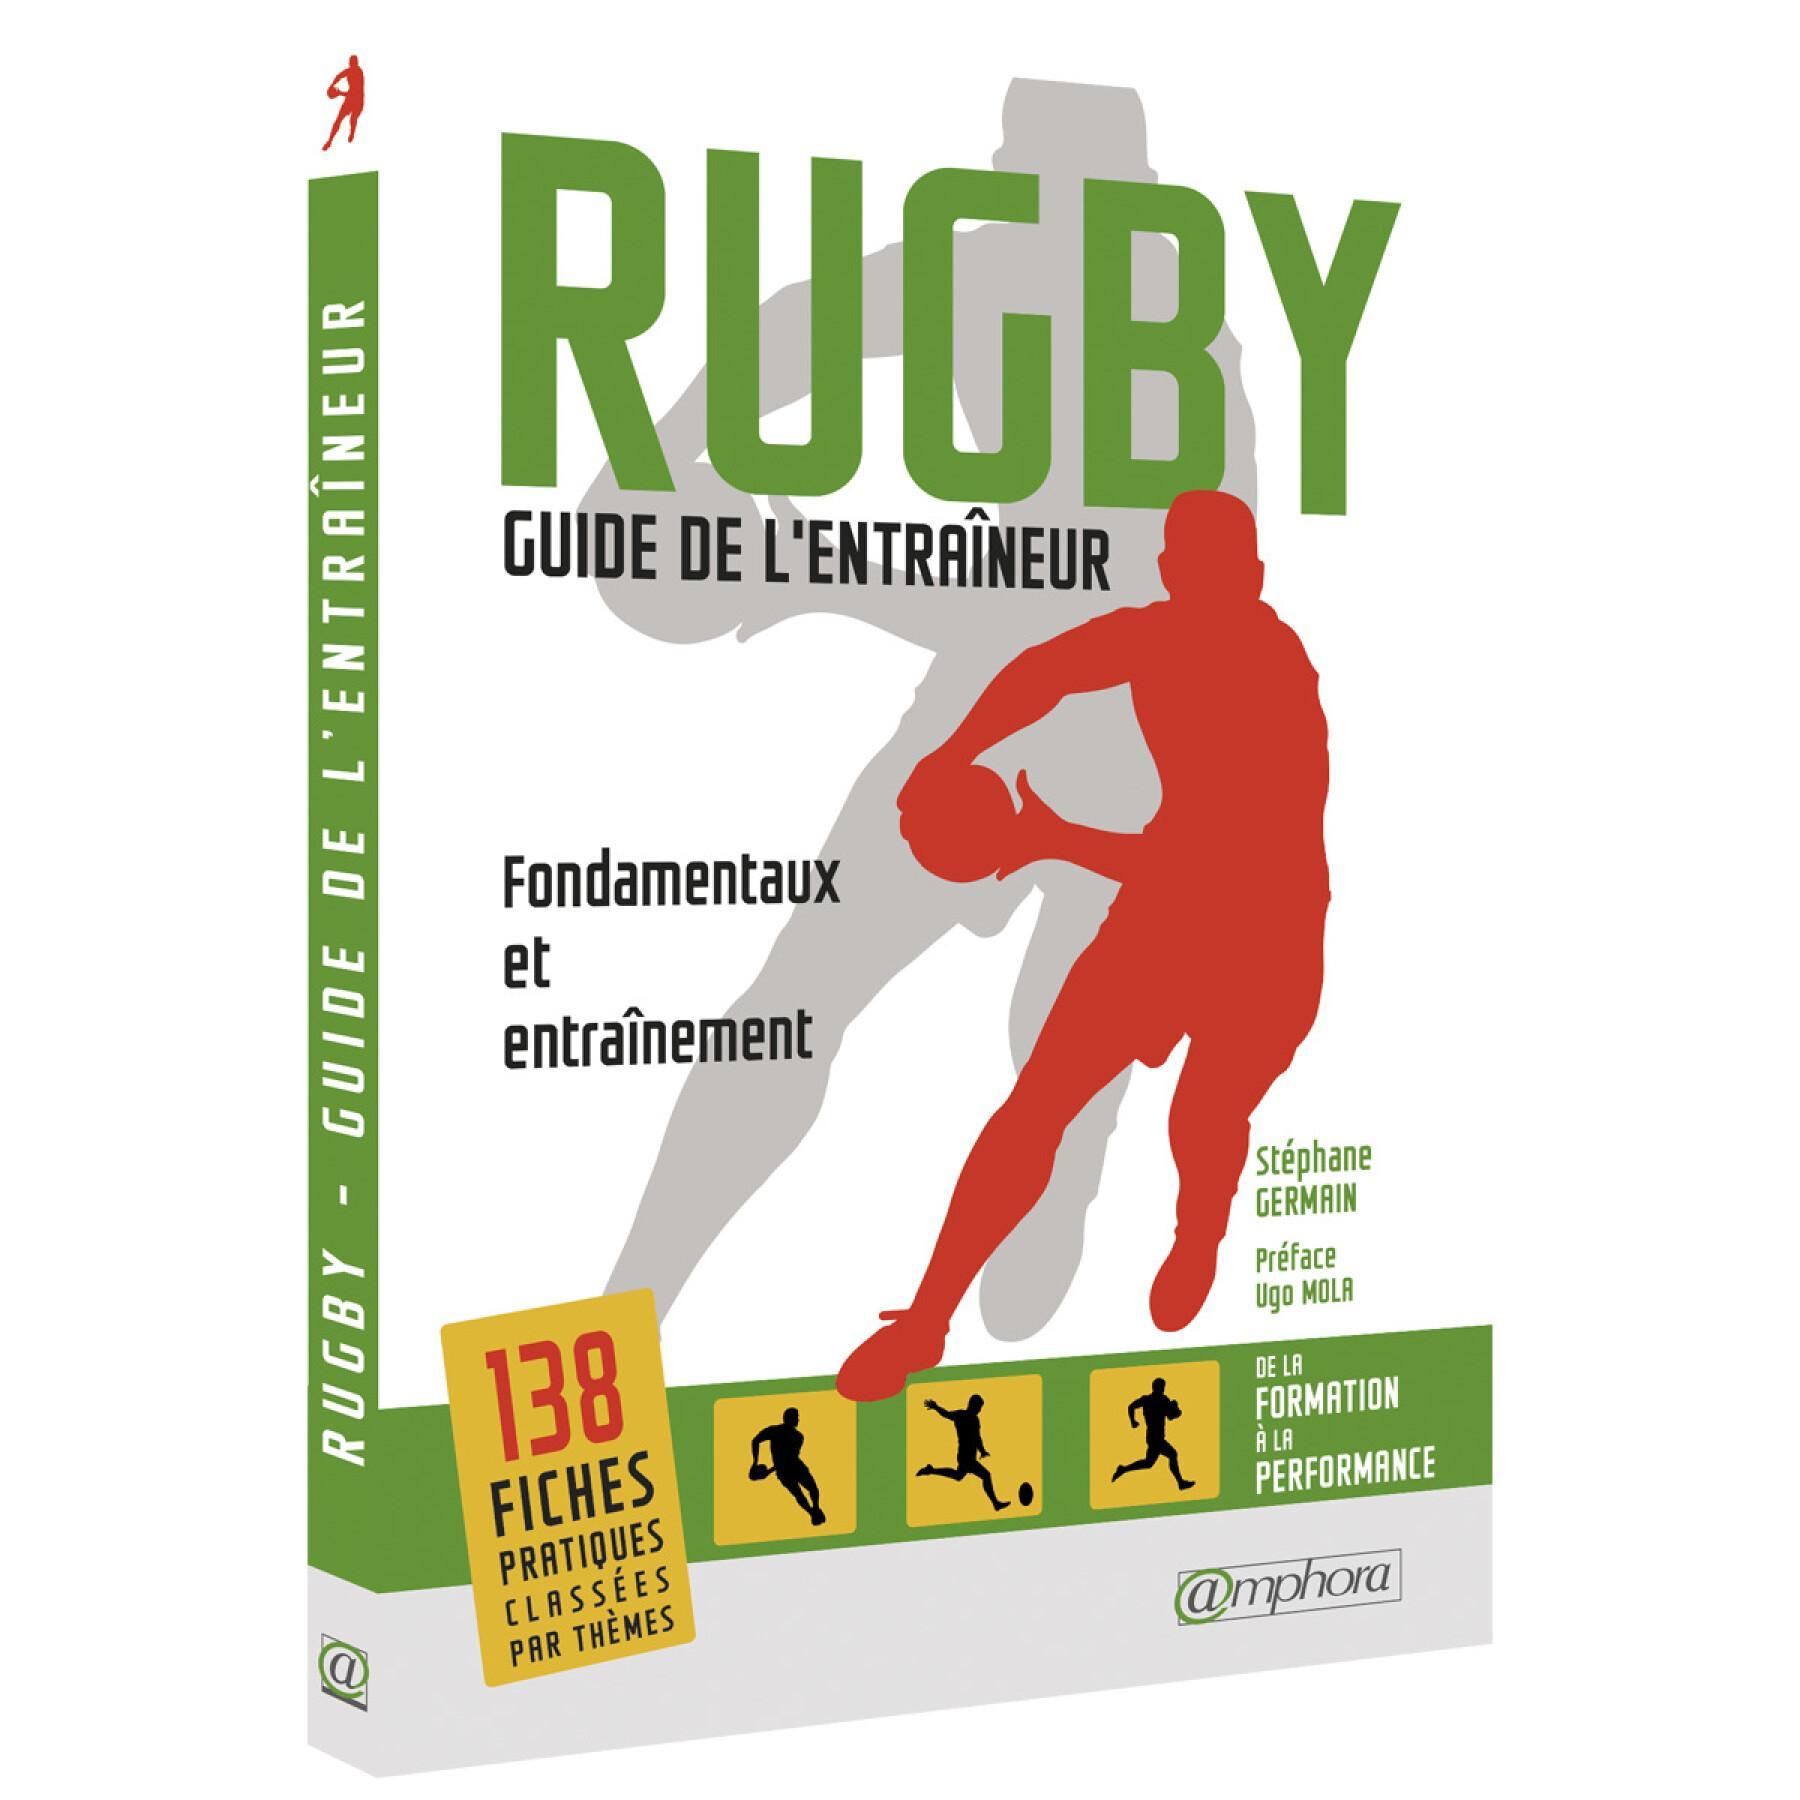 Livre Rugby - Guide de l'entraîneur Amphora